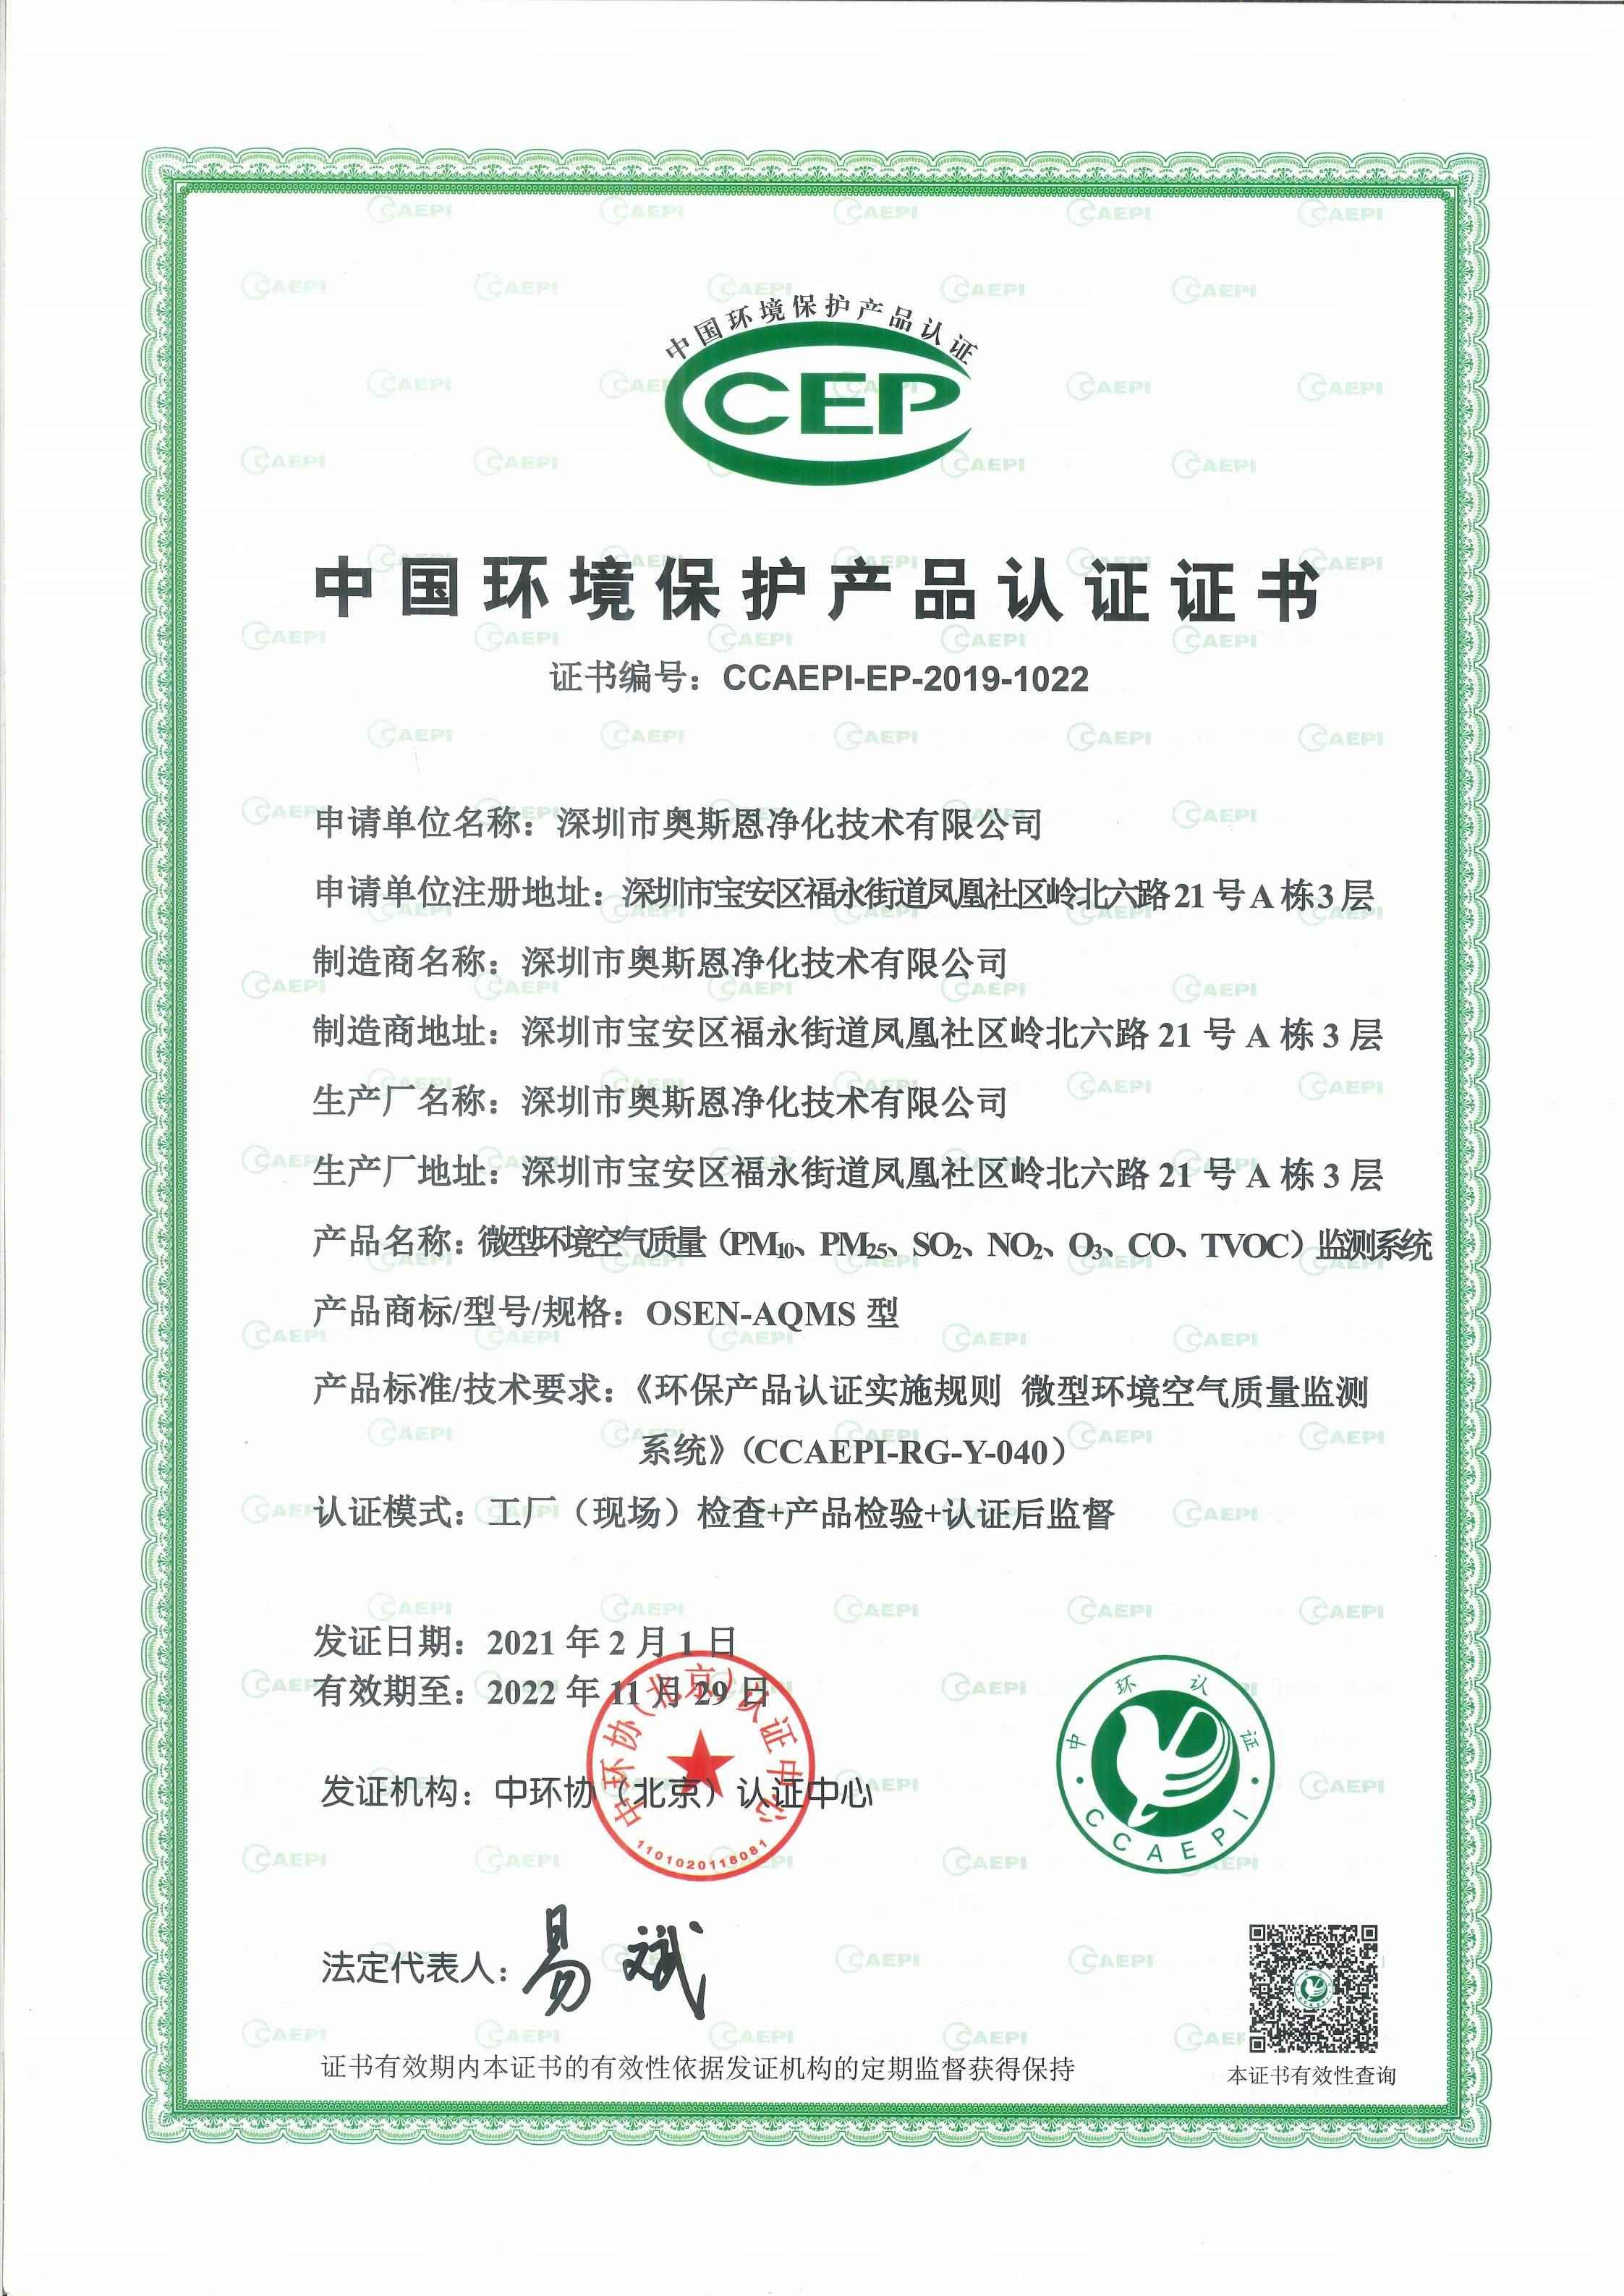 微型空气监测站CCEP认证